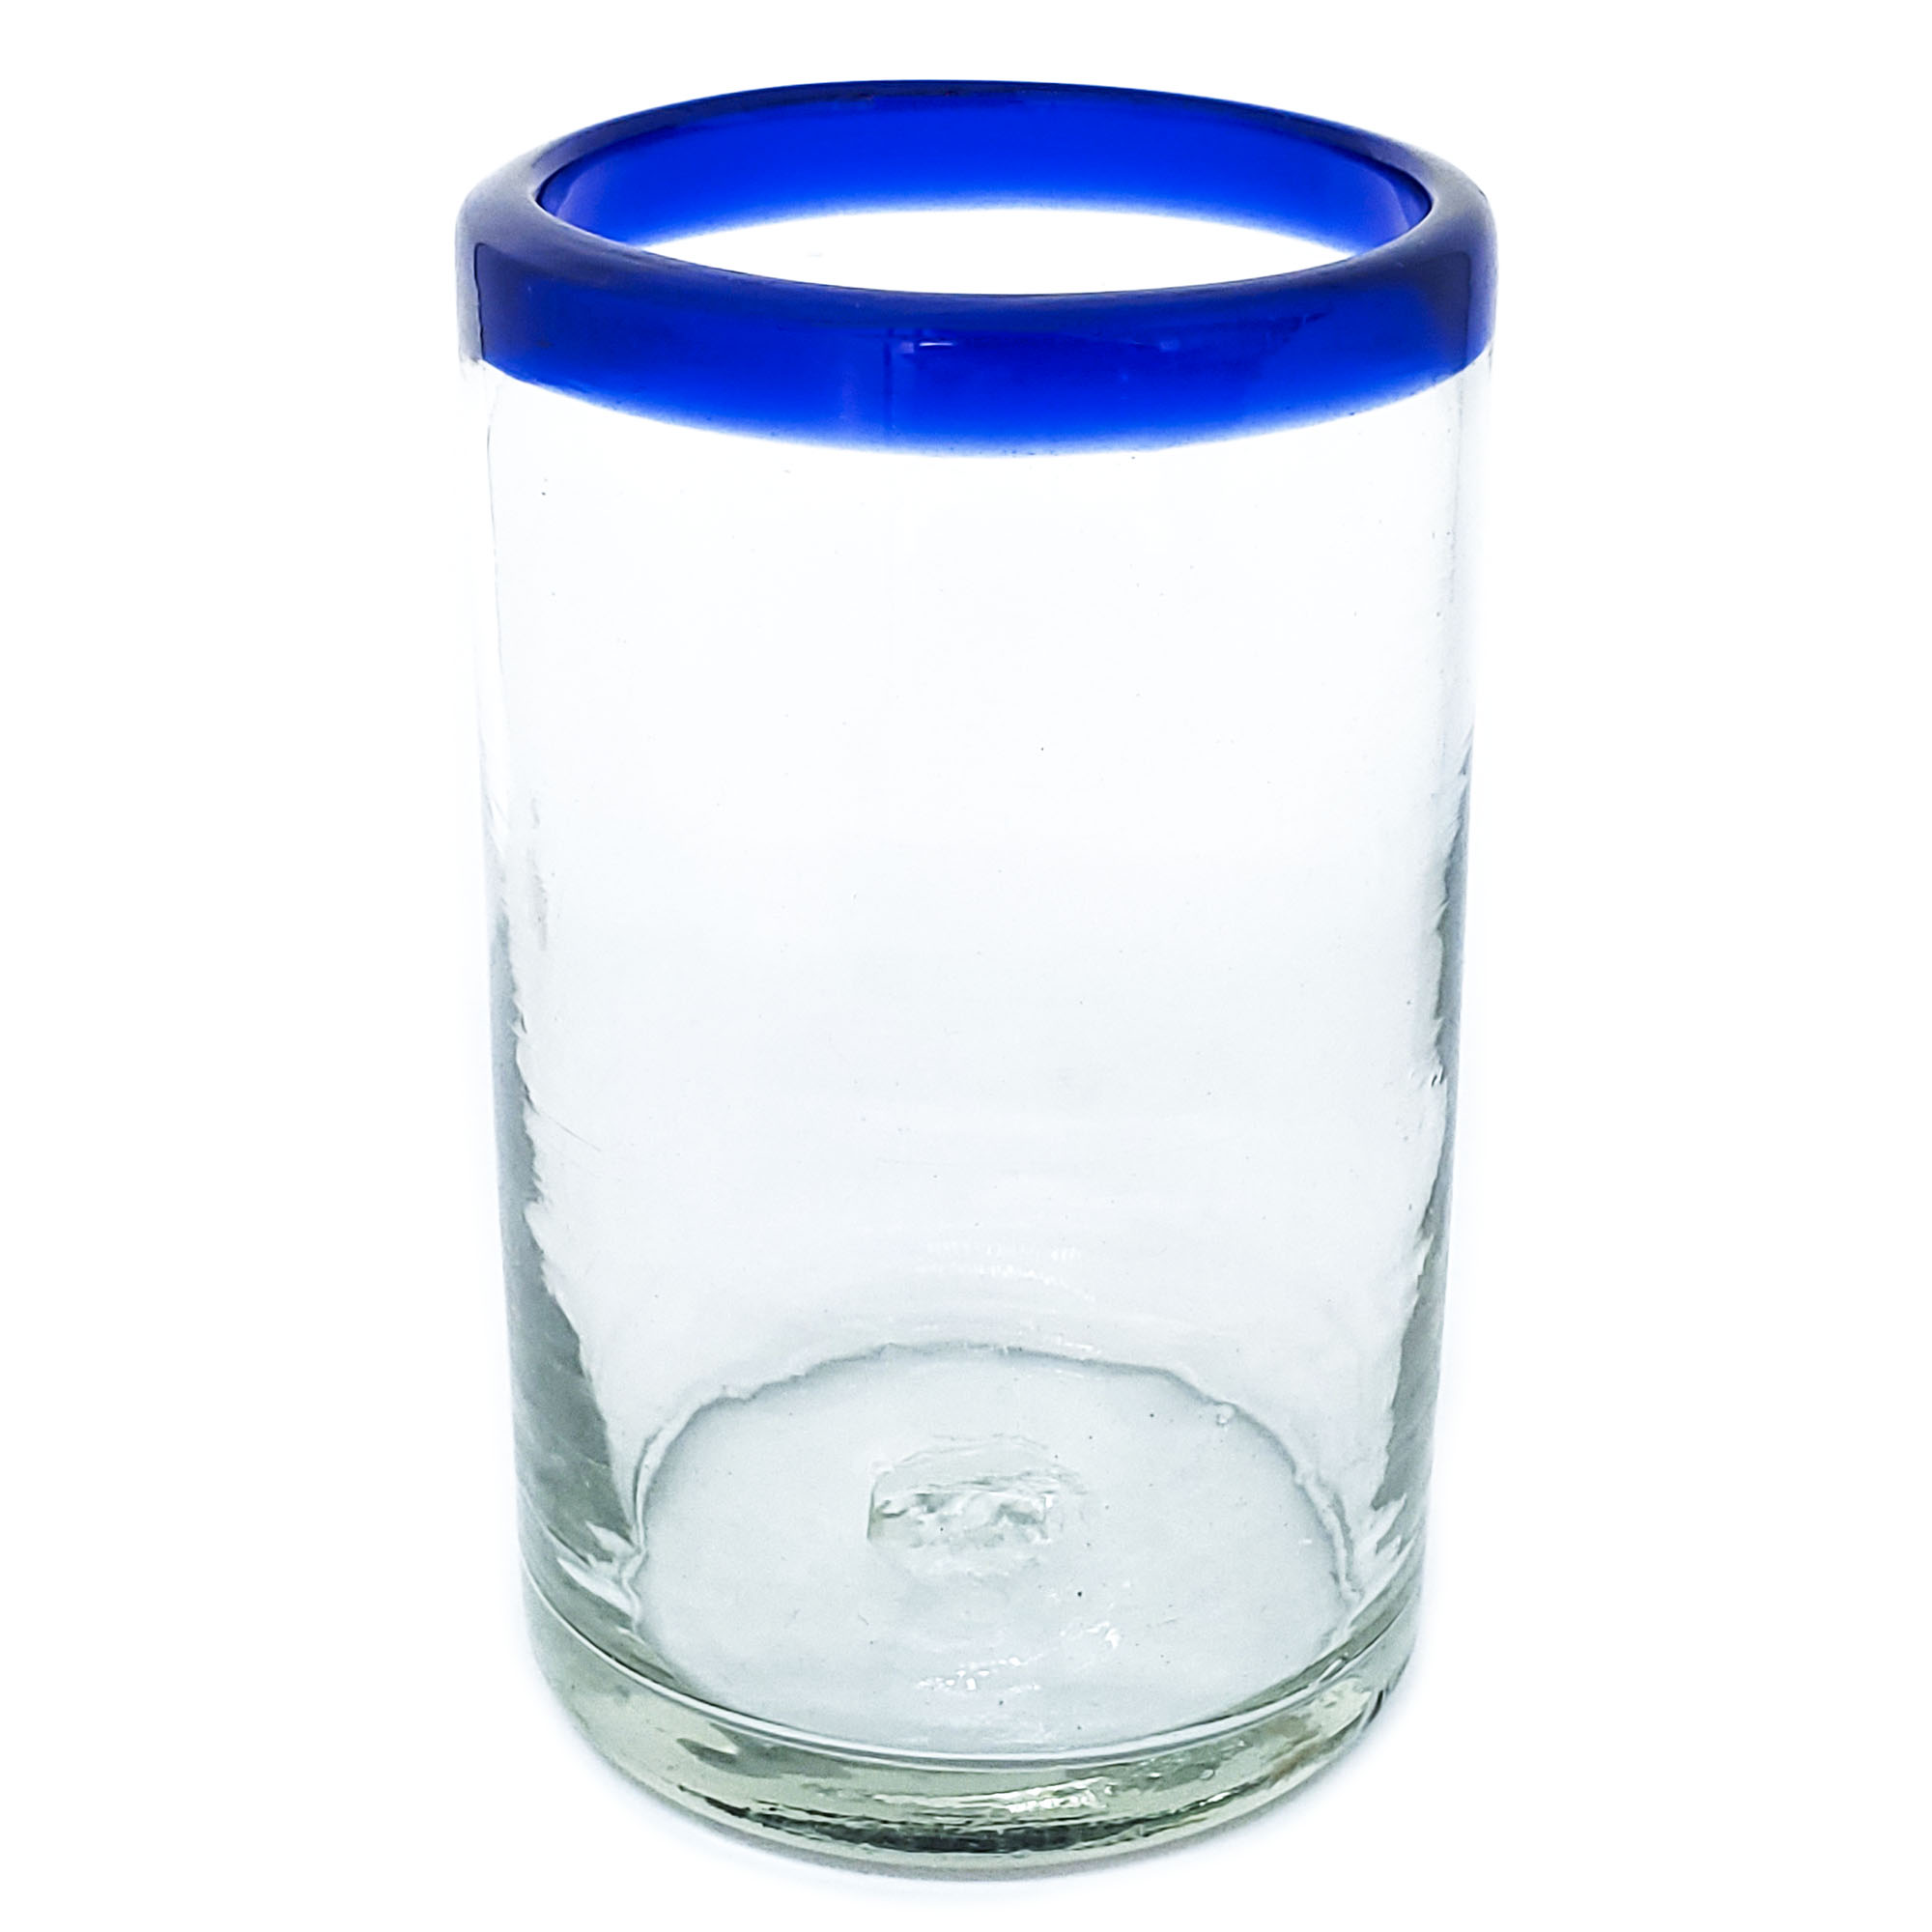  / Cobalt Blue Rim 14 oz Drinking Glasses (set of 6)